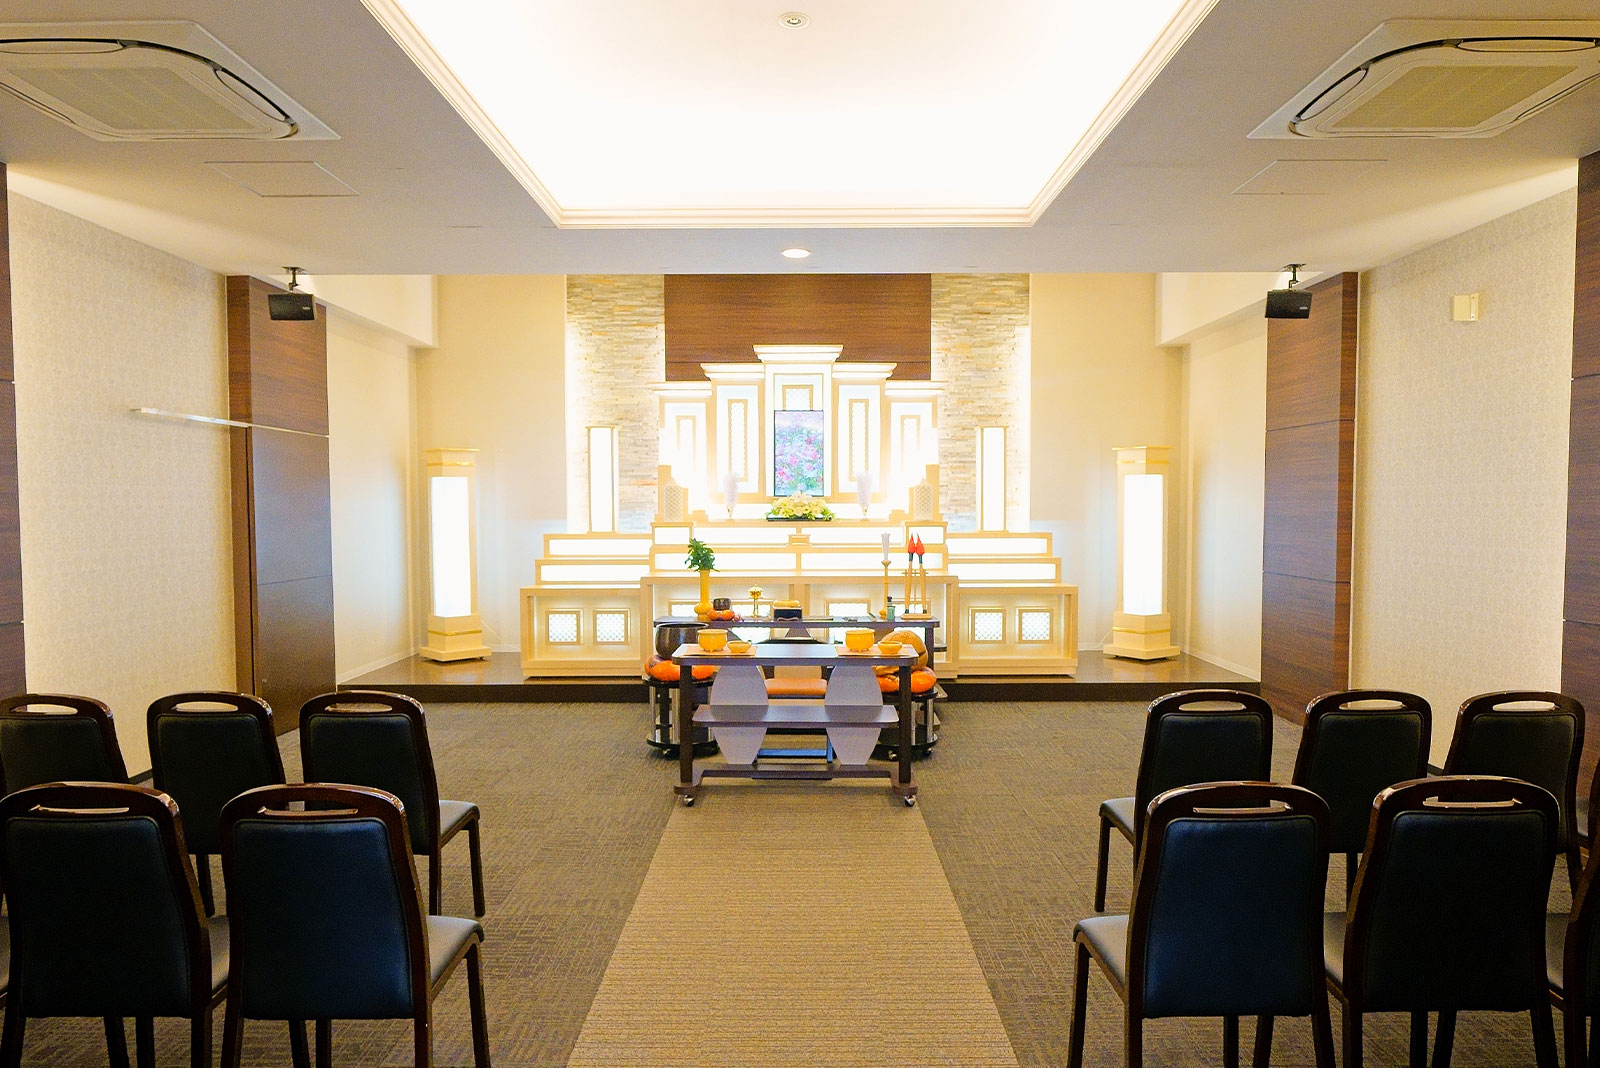 税込132,000円からできる家族葬のトワーズ® 豊川市のホール内装イメージ画像